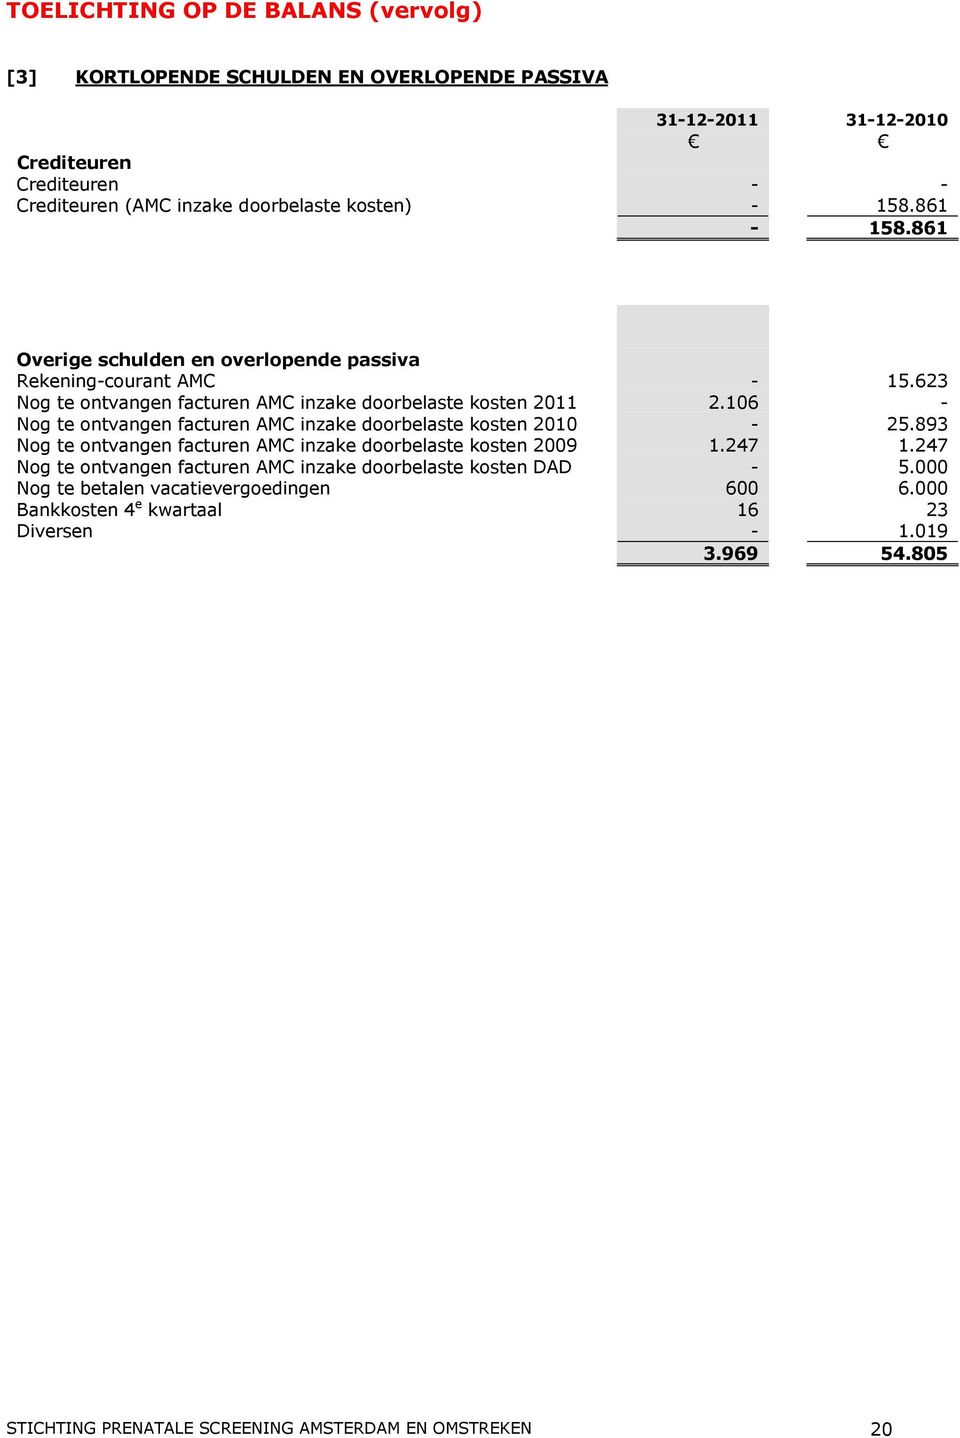 106 - Nog te ontvangen facturen AMC inzake doorbelaste kosten 2010-25.893 Nog te ontvangen facturen AMC inzake doorbelaste kosten 2009 1.247 1.